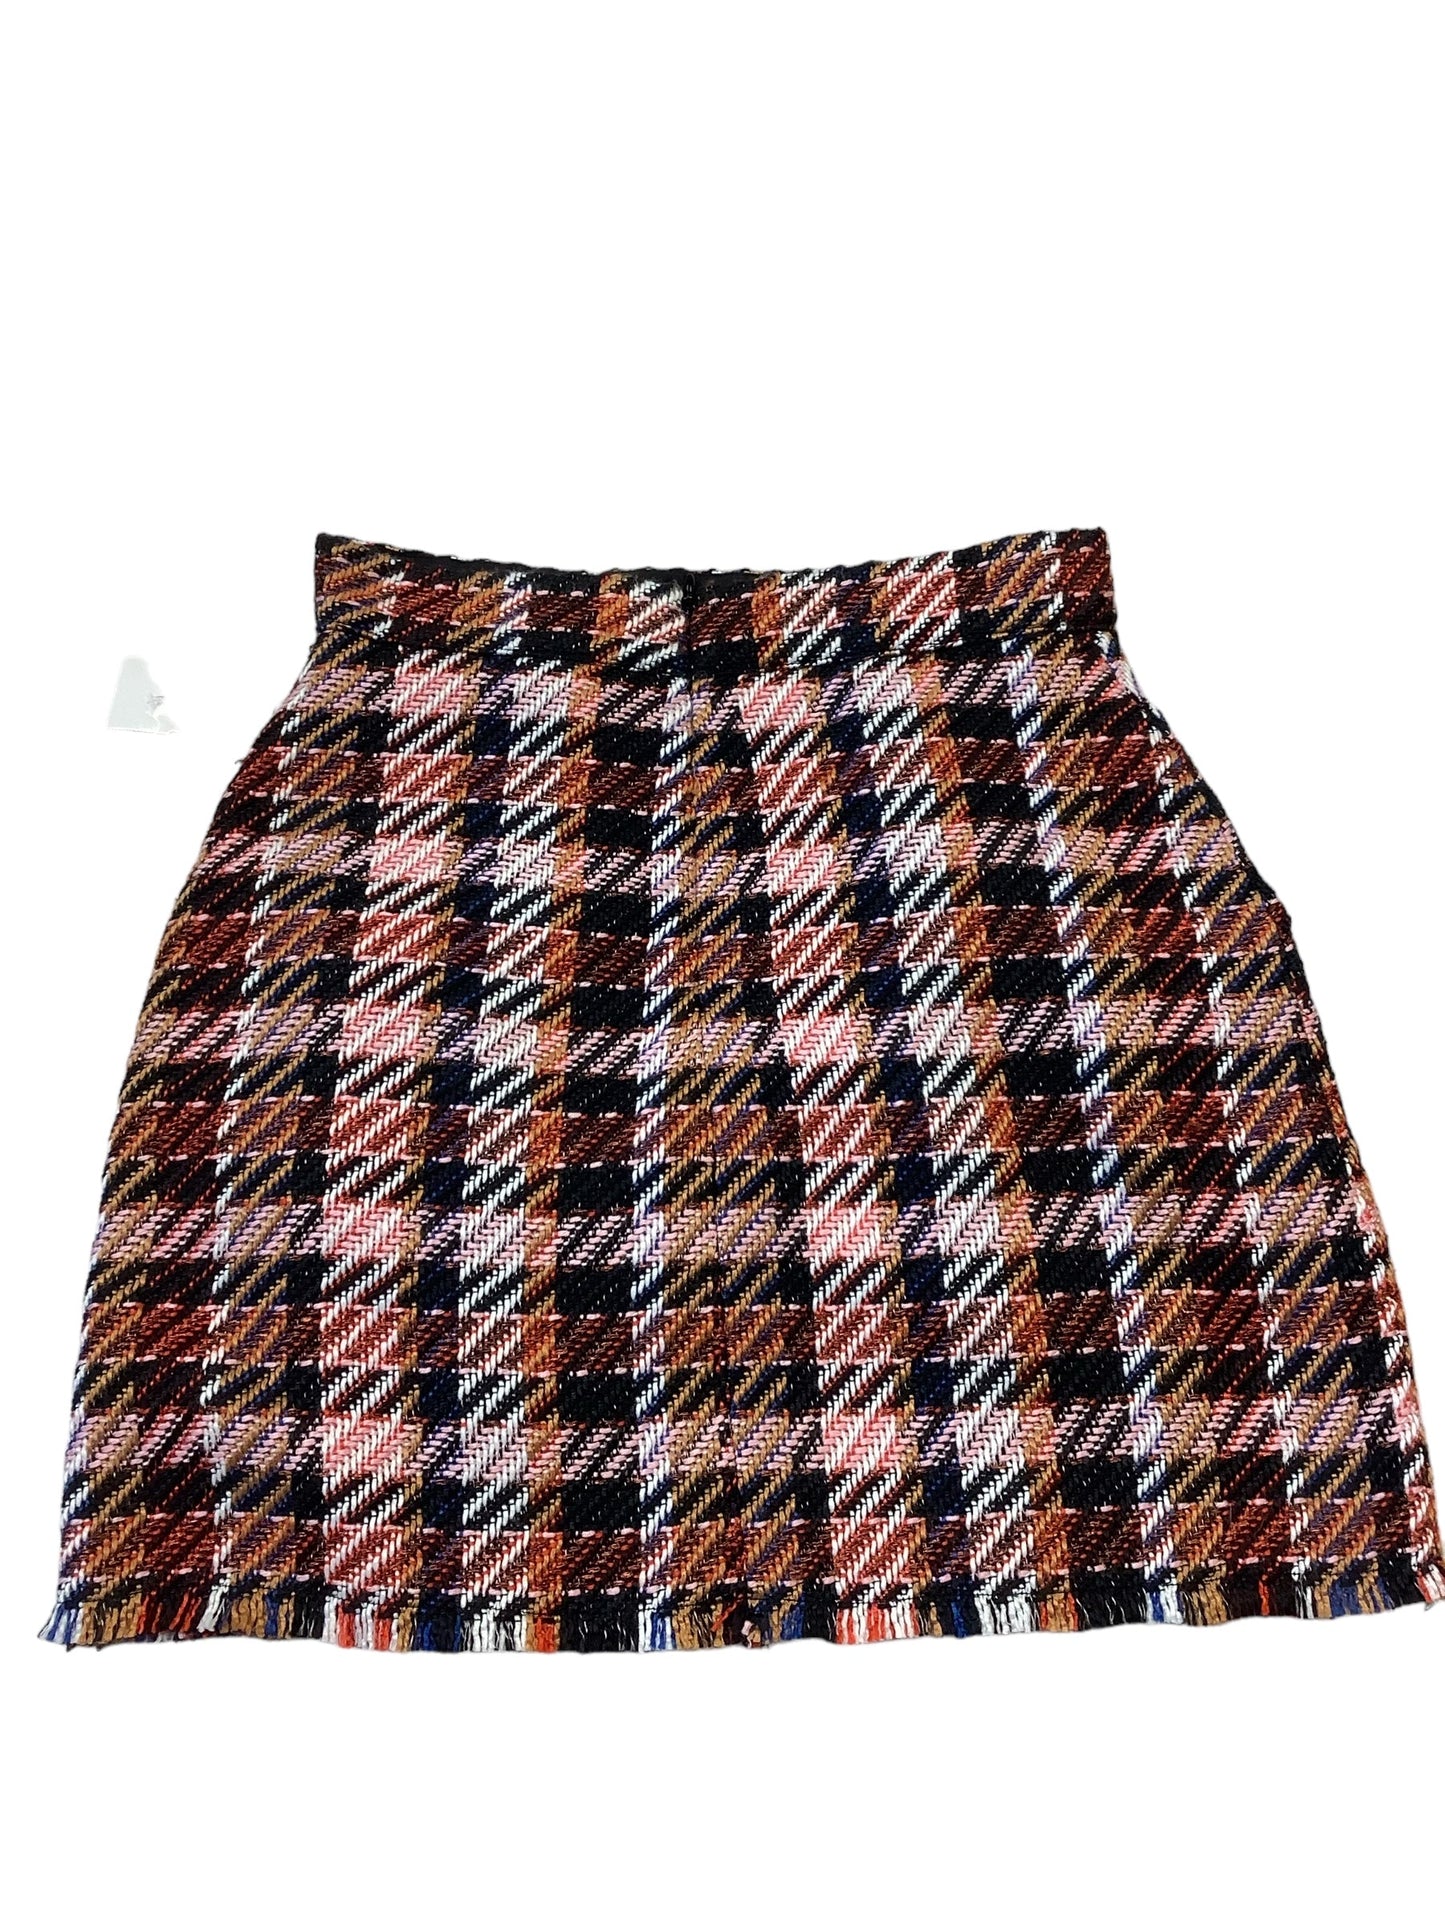 Skirt Mini & Short By Asos  Size: 6